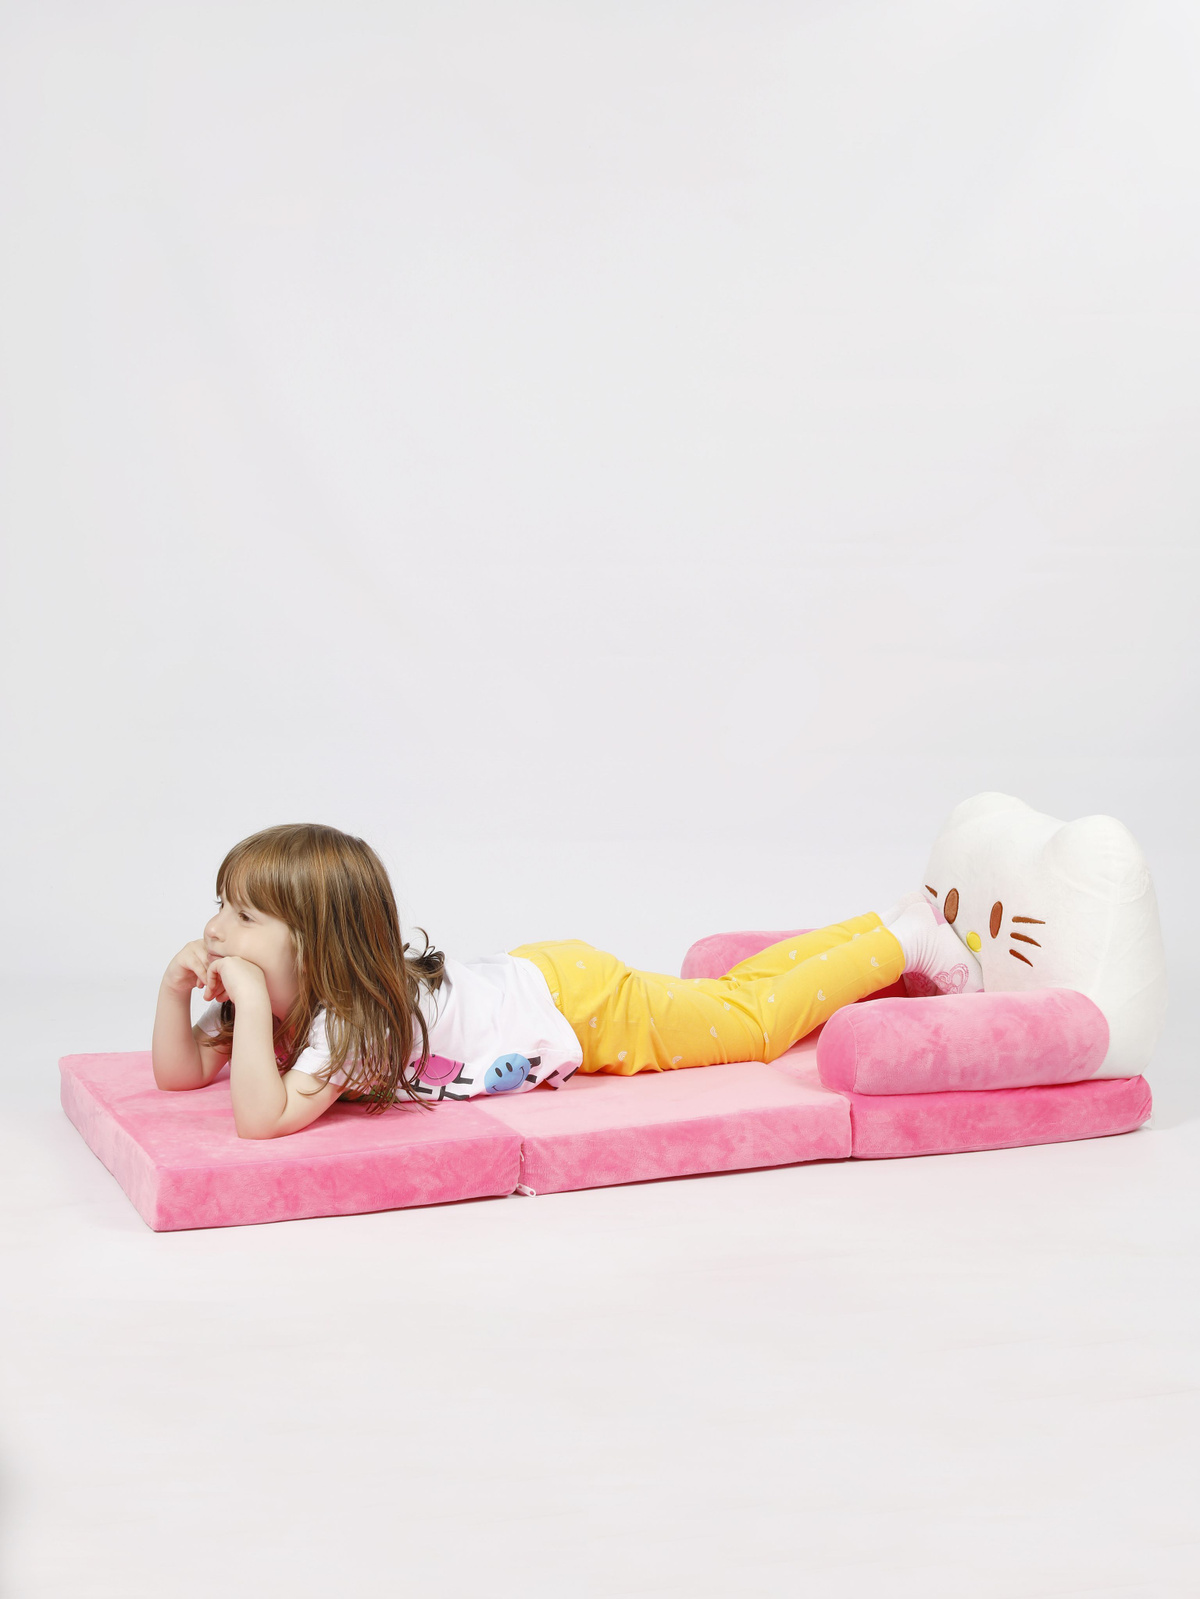 Комфортное мягкое кресло, которое легко превращается в небольшую кровать.